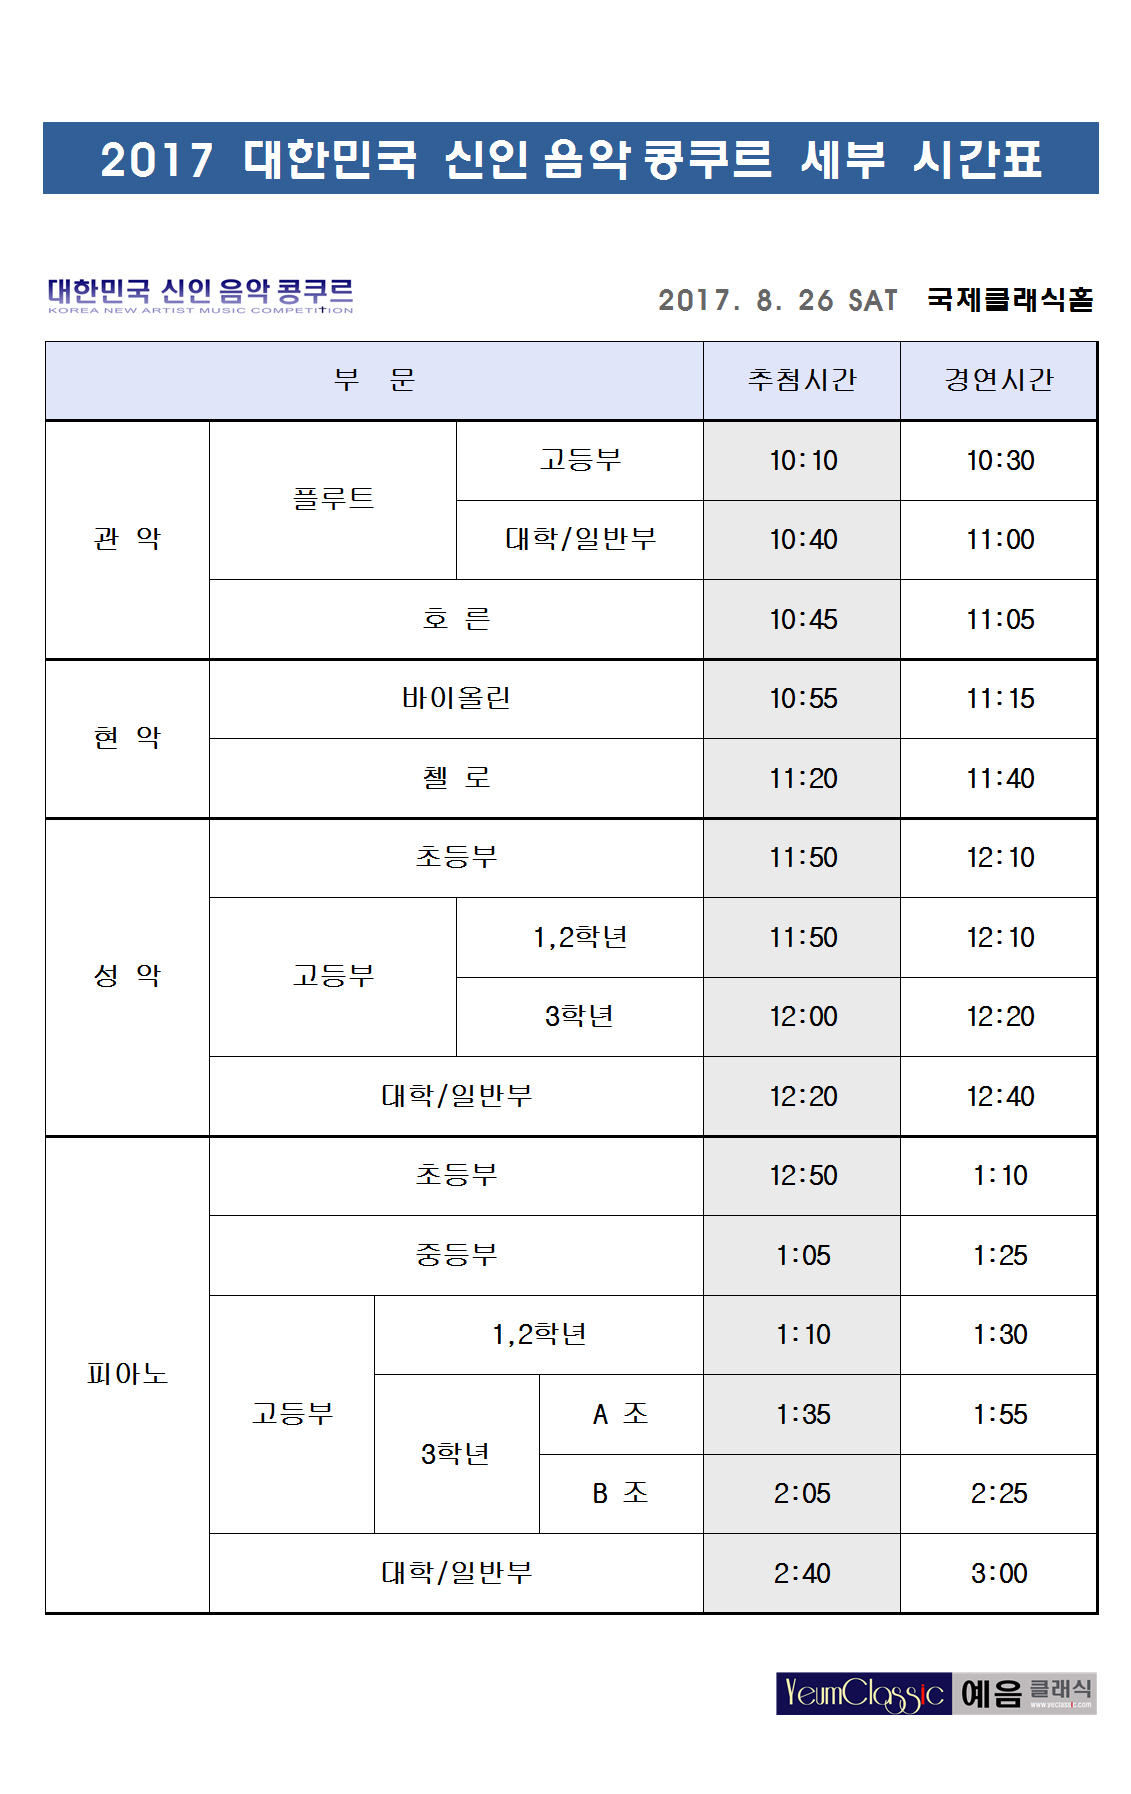 2017 대한민국 신인 음악 콩쿠르 세부 시간표 1.jpg